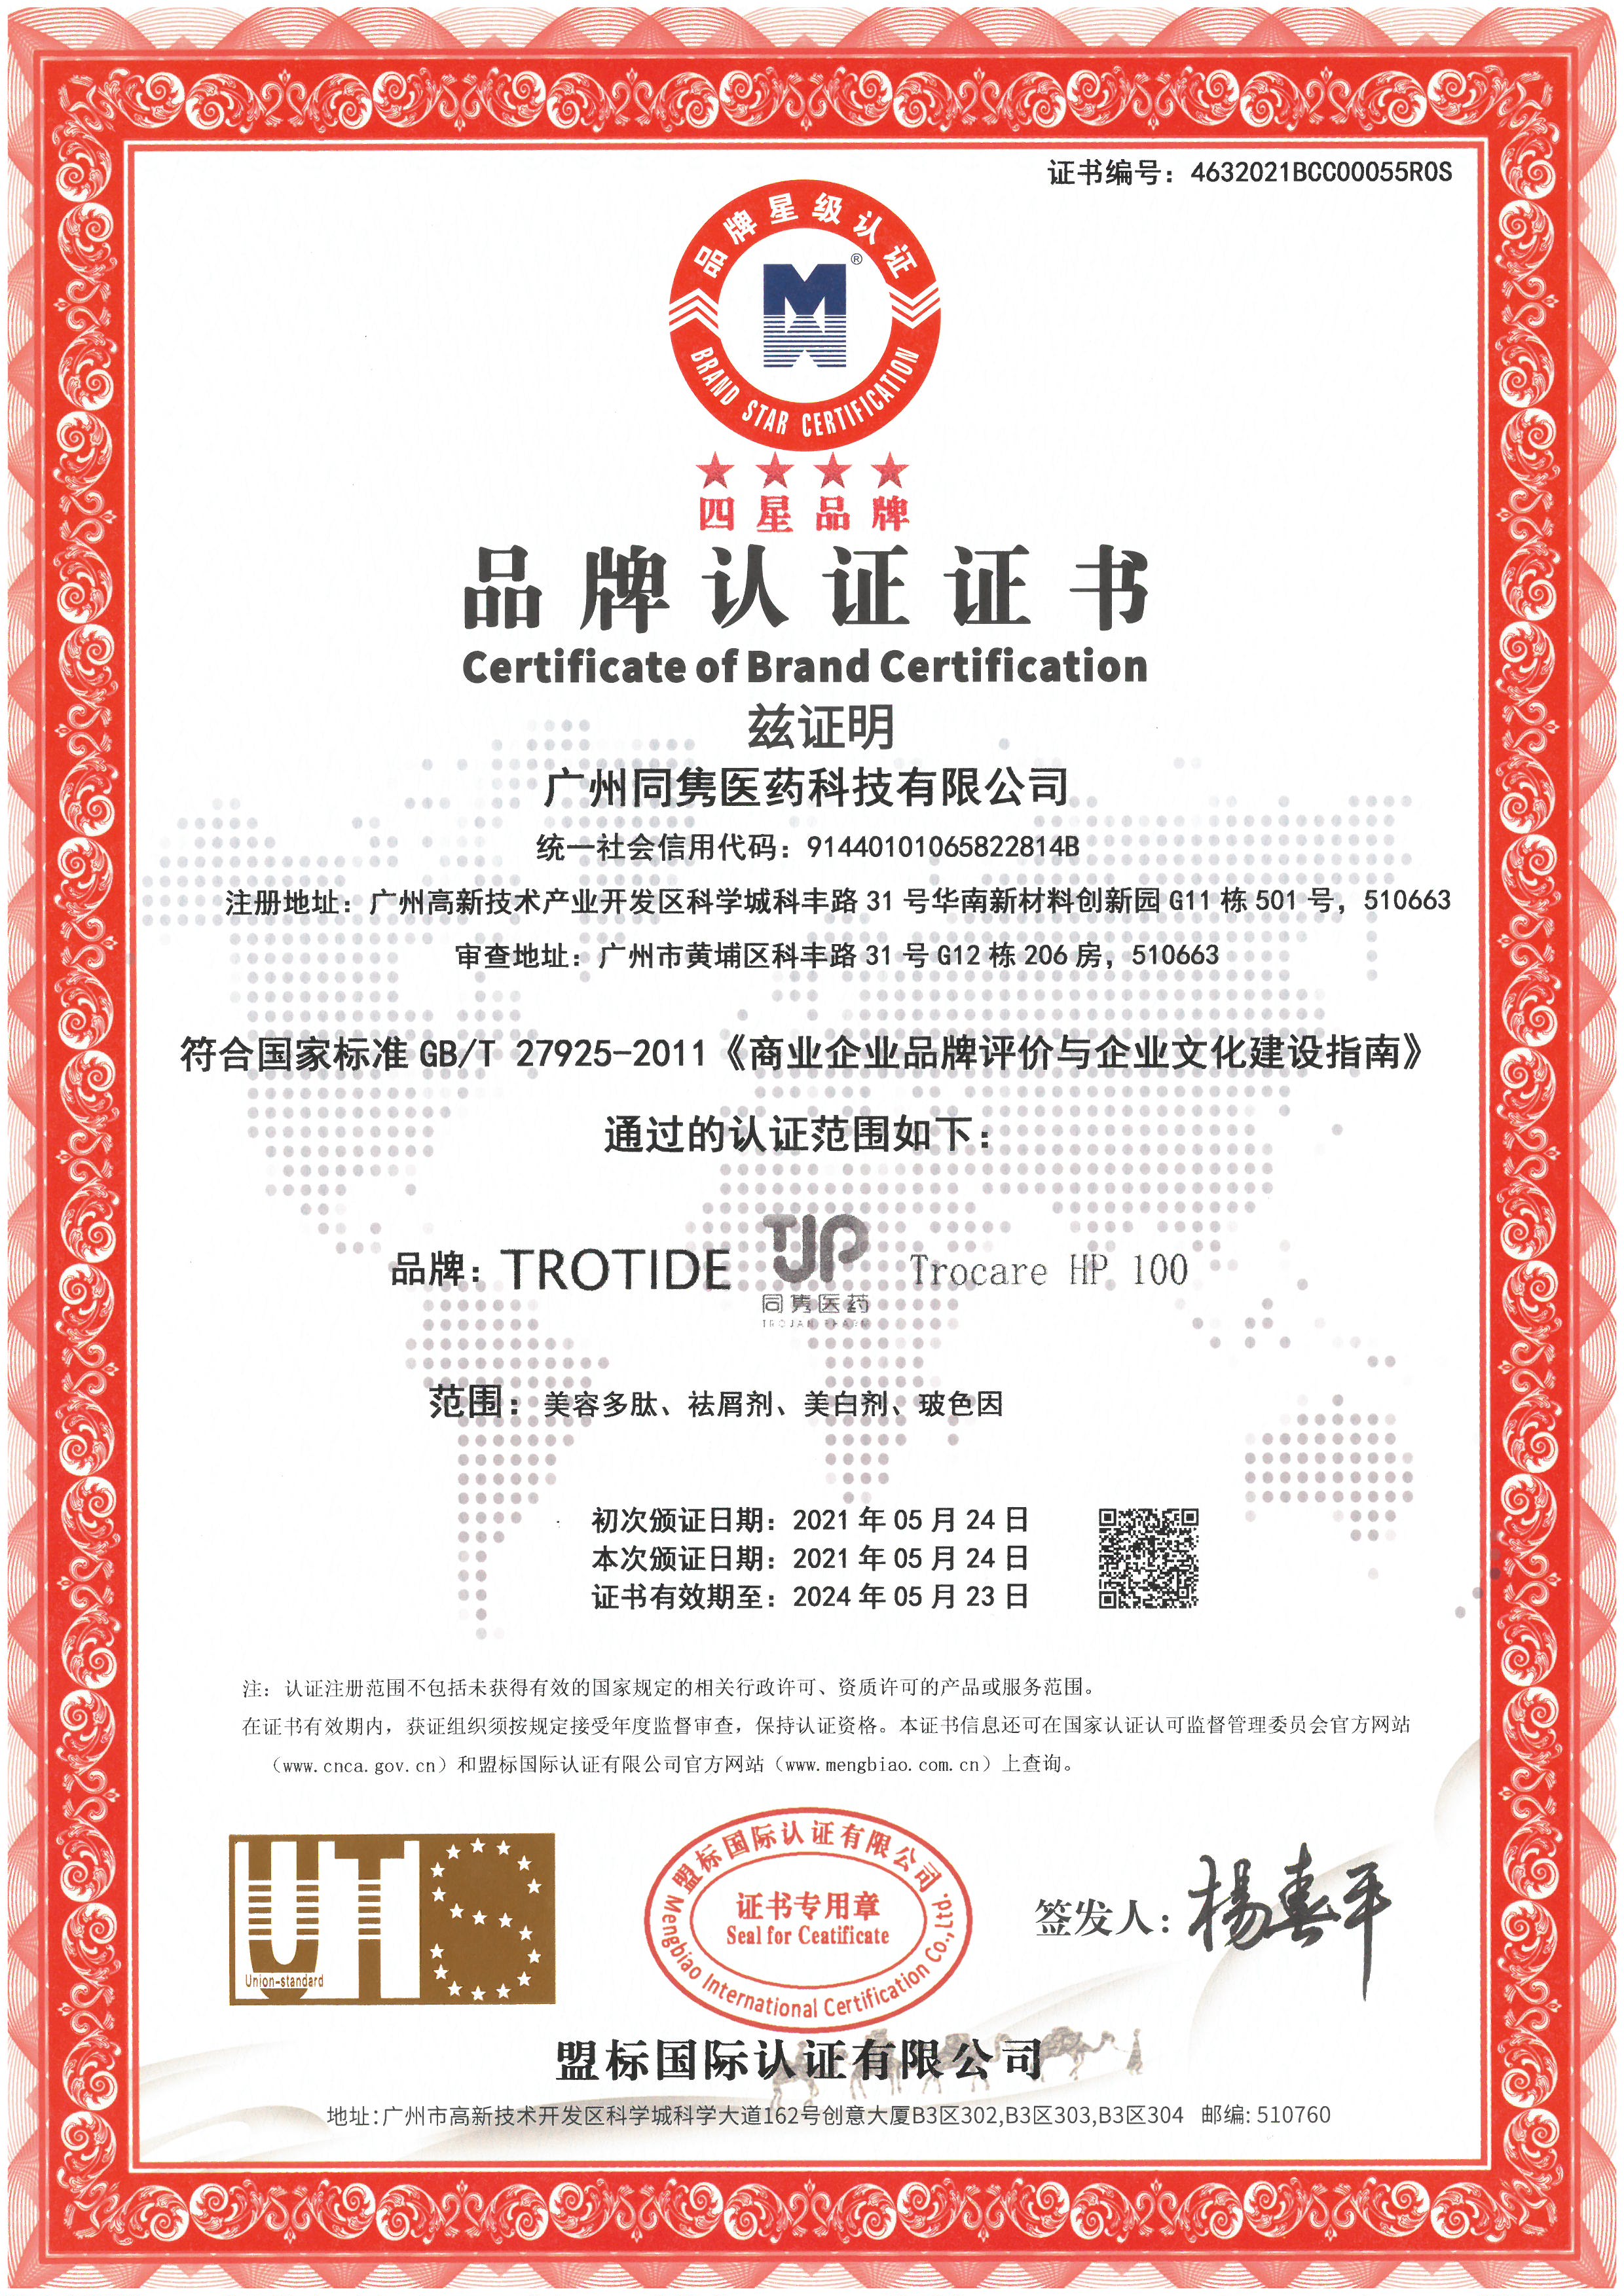 2021年品牌认证证书（四星）－同隽医药cn